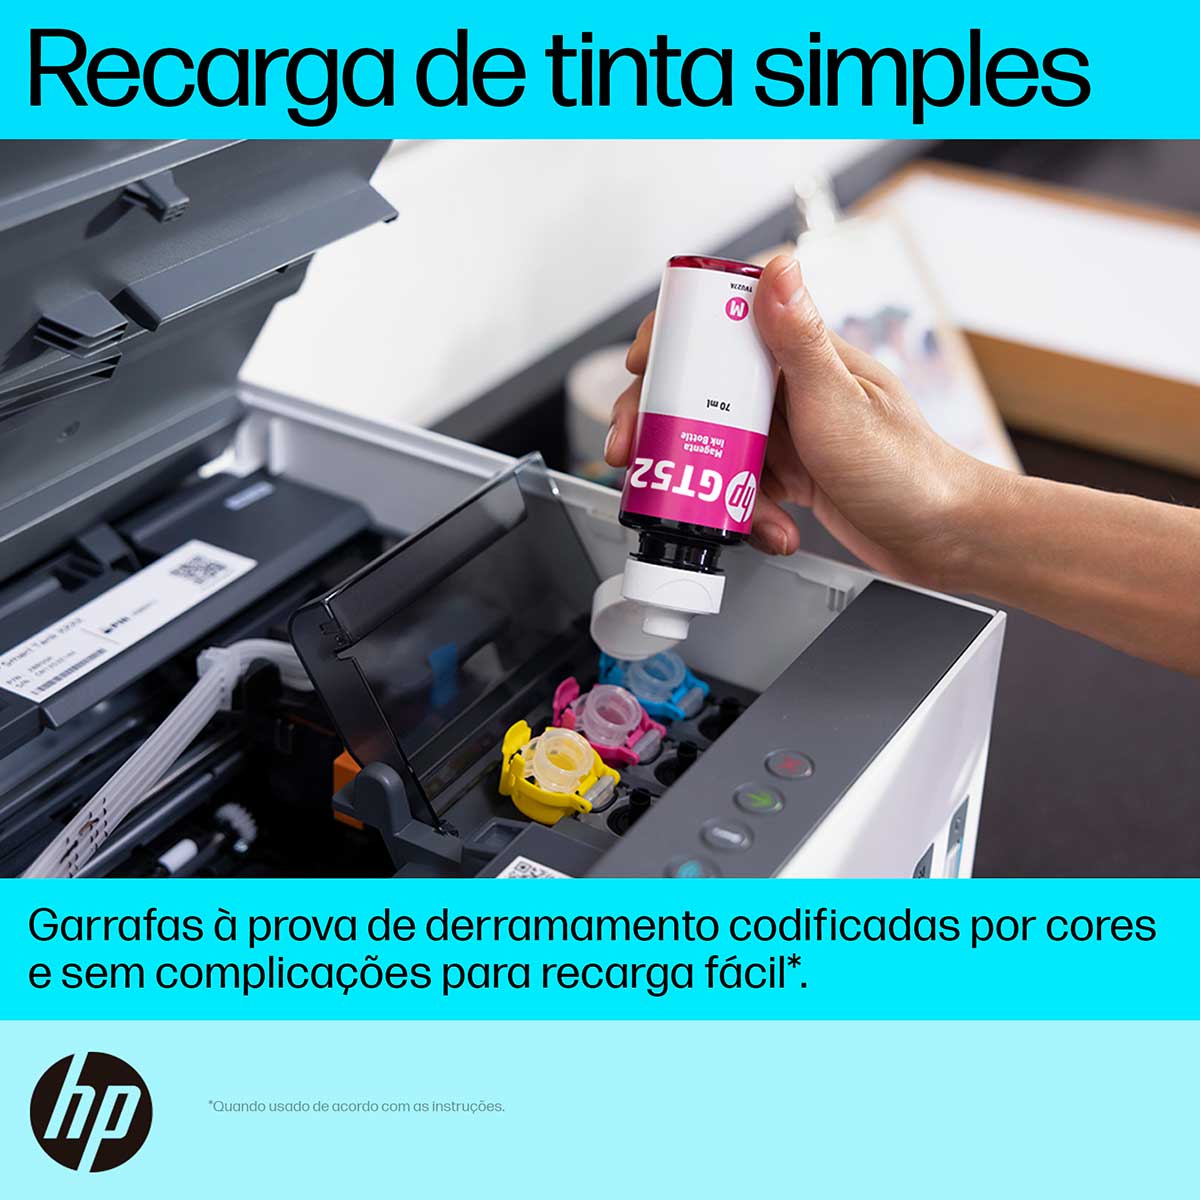 impressora-multifuncional-hp-smart-tank-724-tanque-de-tinta-colorida-scanner-duplex-wi-fi-usb-bluetooth-bivolt---2g9q2a-7.jpg